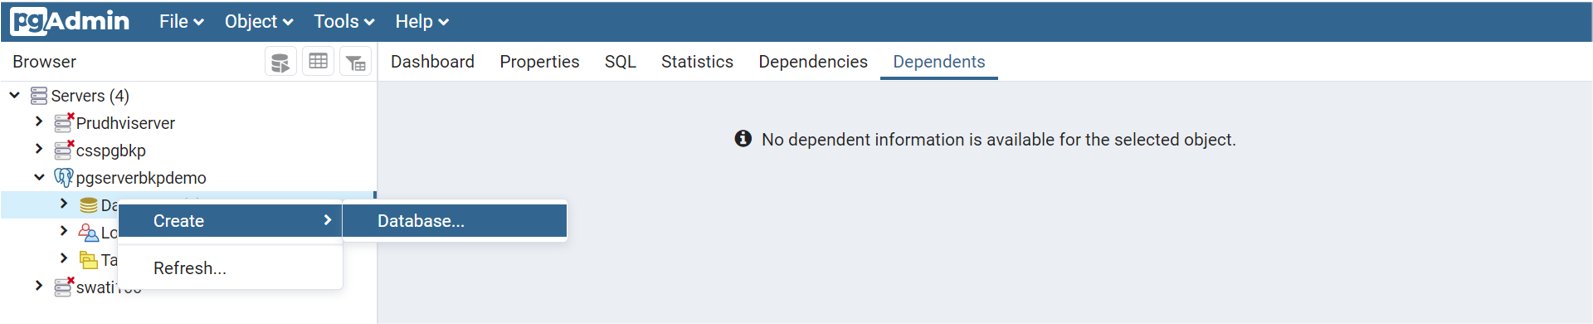 Captura de pantalla que muestra el proceso para agregar nuevas bases de datos y usuarios de base de datos al servidor.